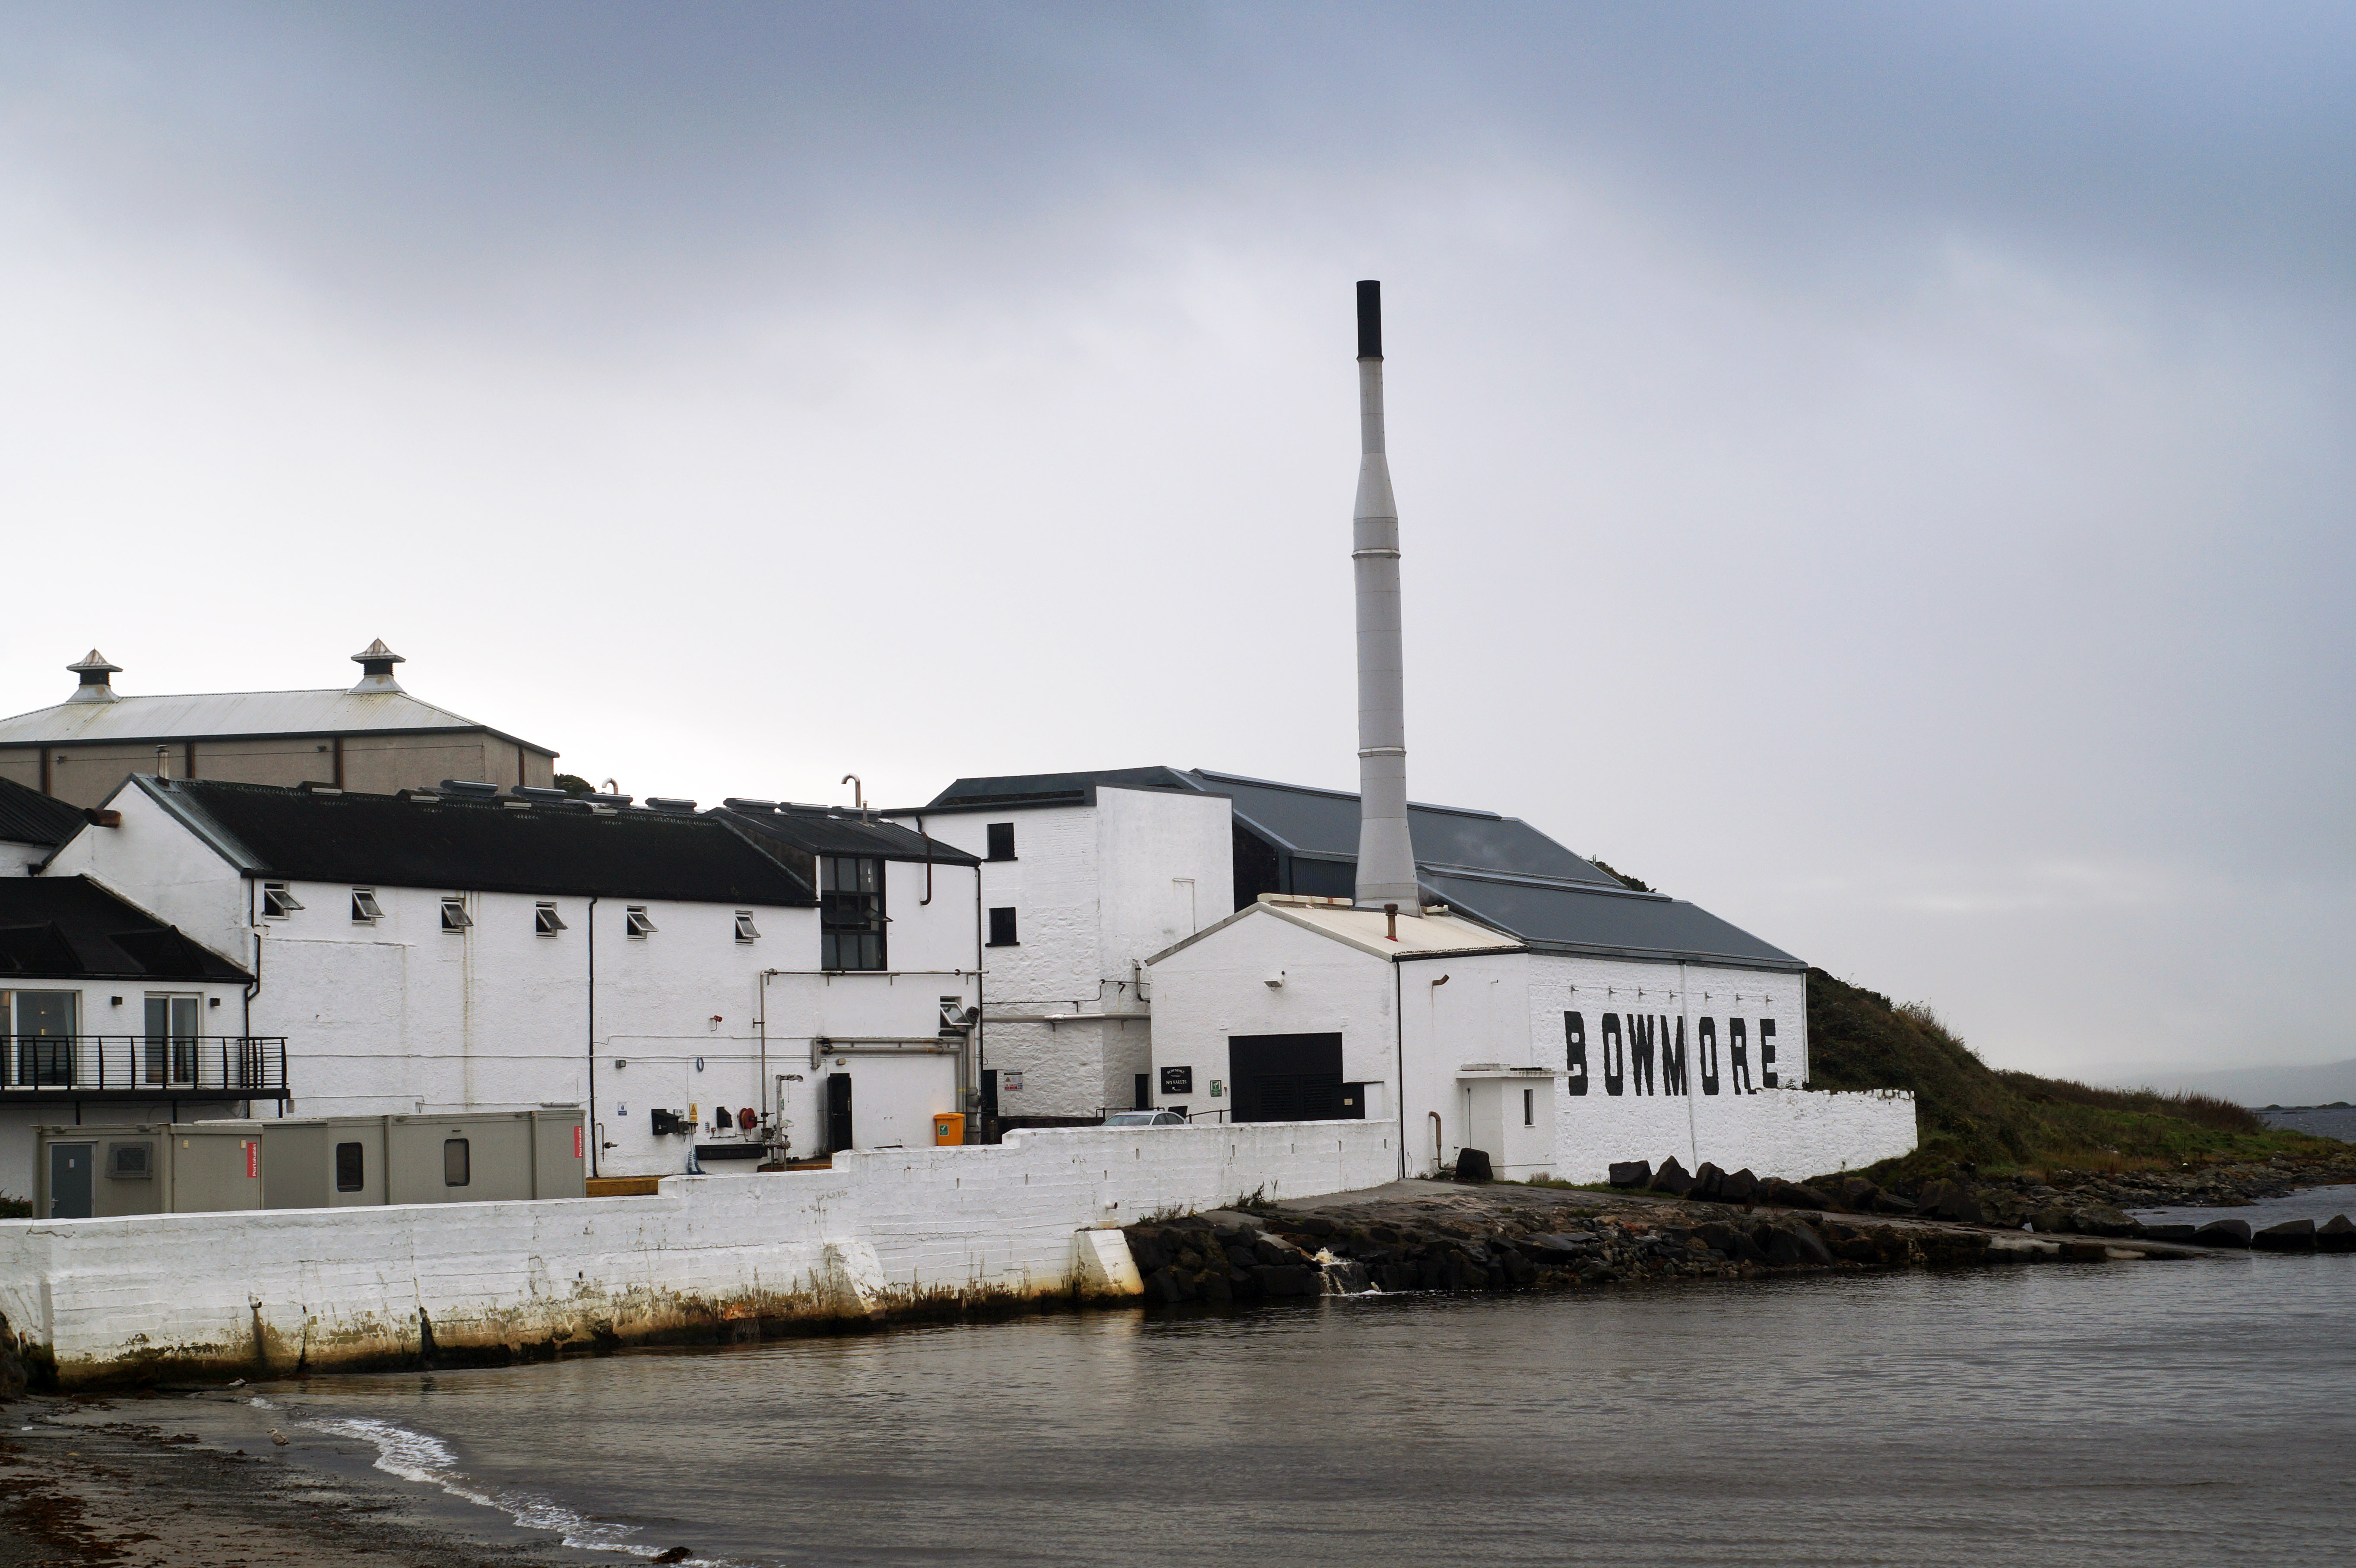 3 bin 200 nüfuslu Islay adasının okyanus kıyılarındaki tam 9 damıtımevi, üç vardiya viski damıtıyor…